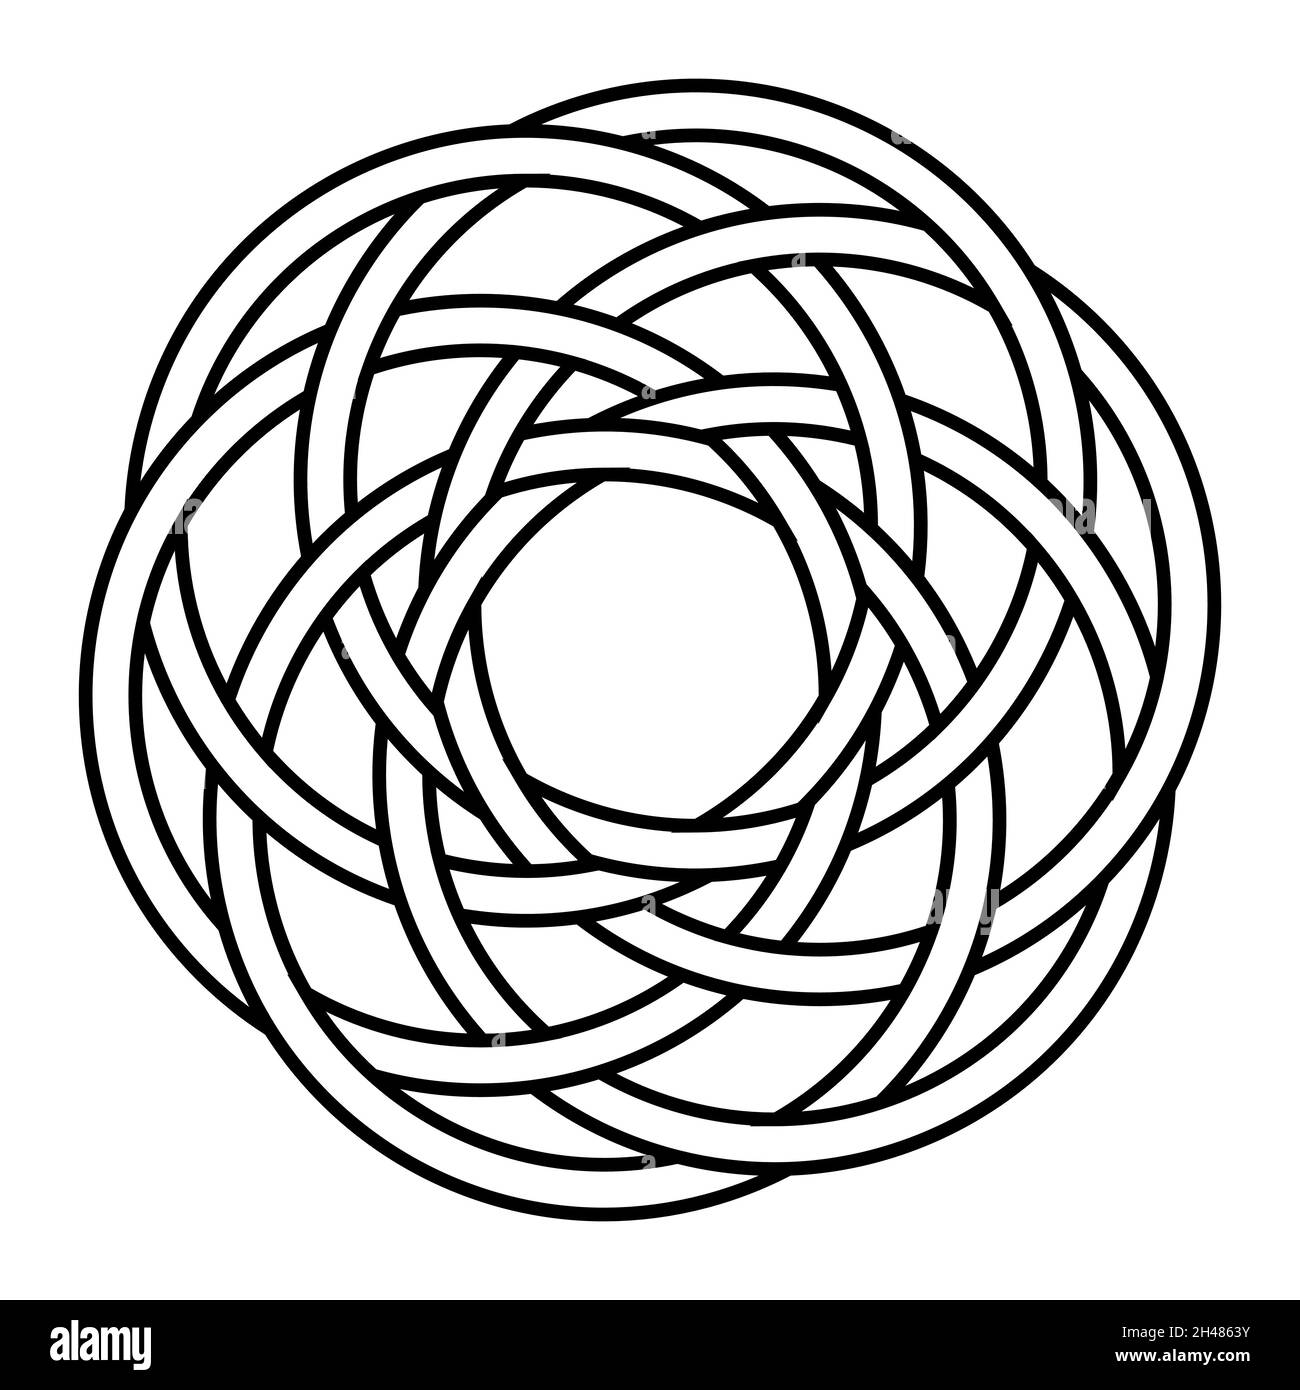 Le mandala arabe simple ressemblent à des cercles de fleurs en rotation, illustration de stock Illustration de Vecteur